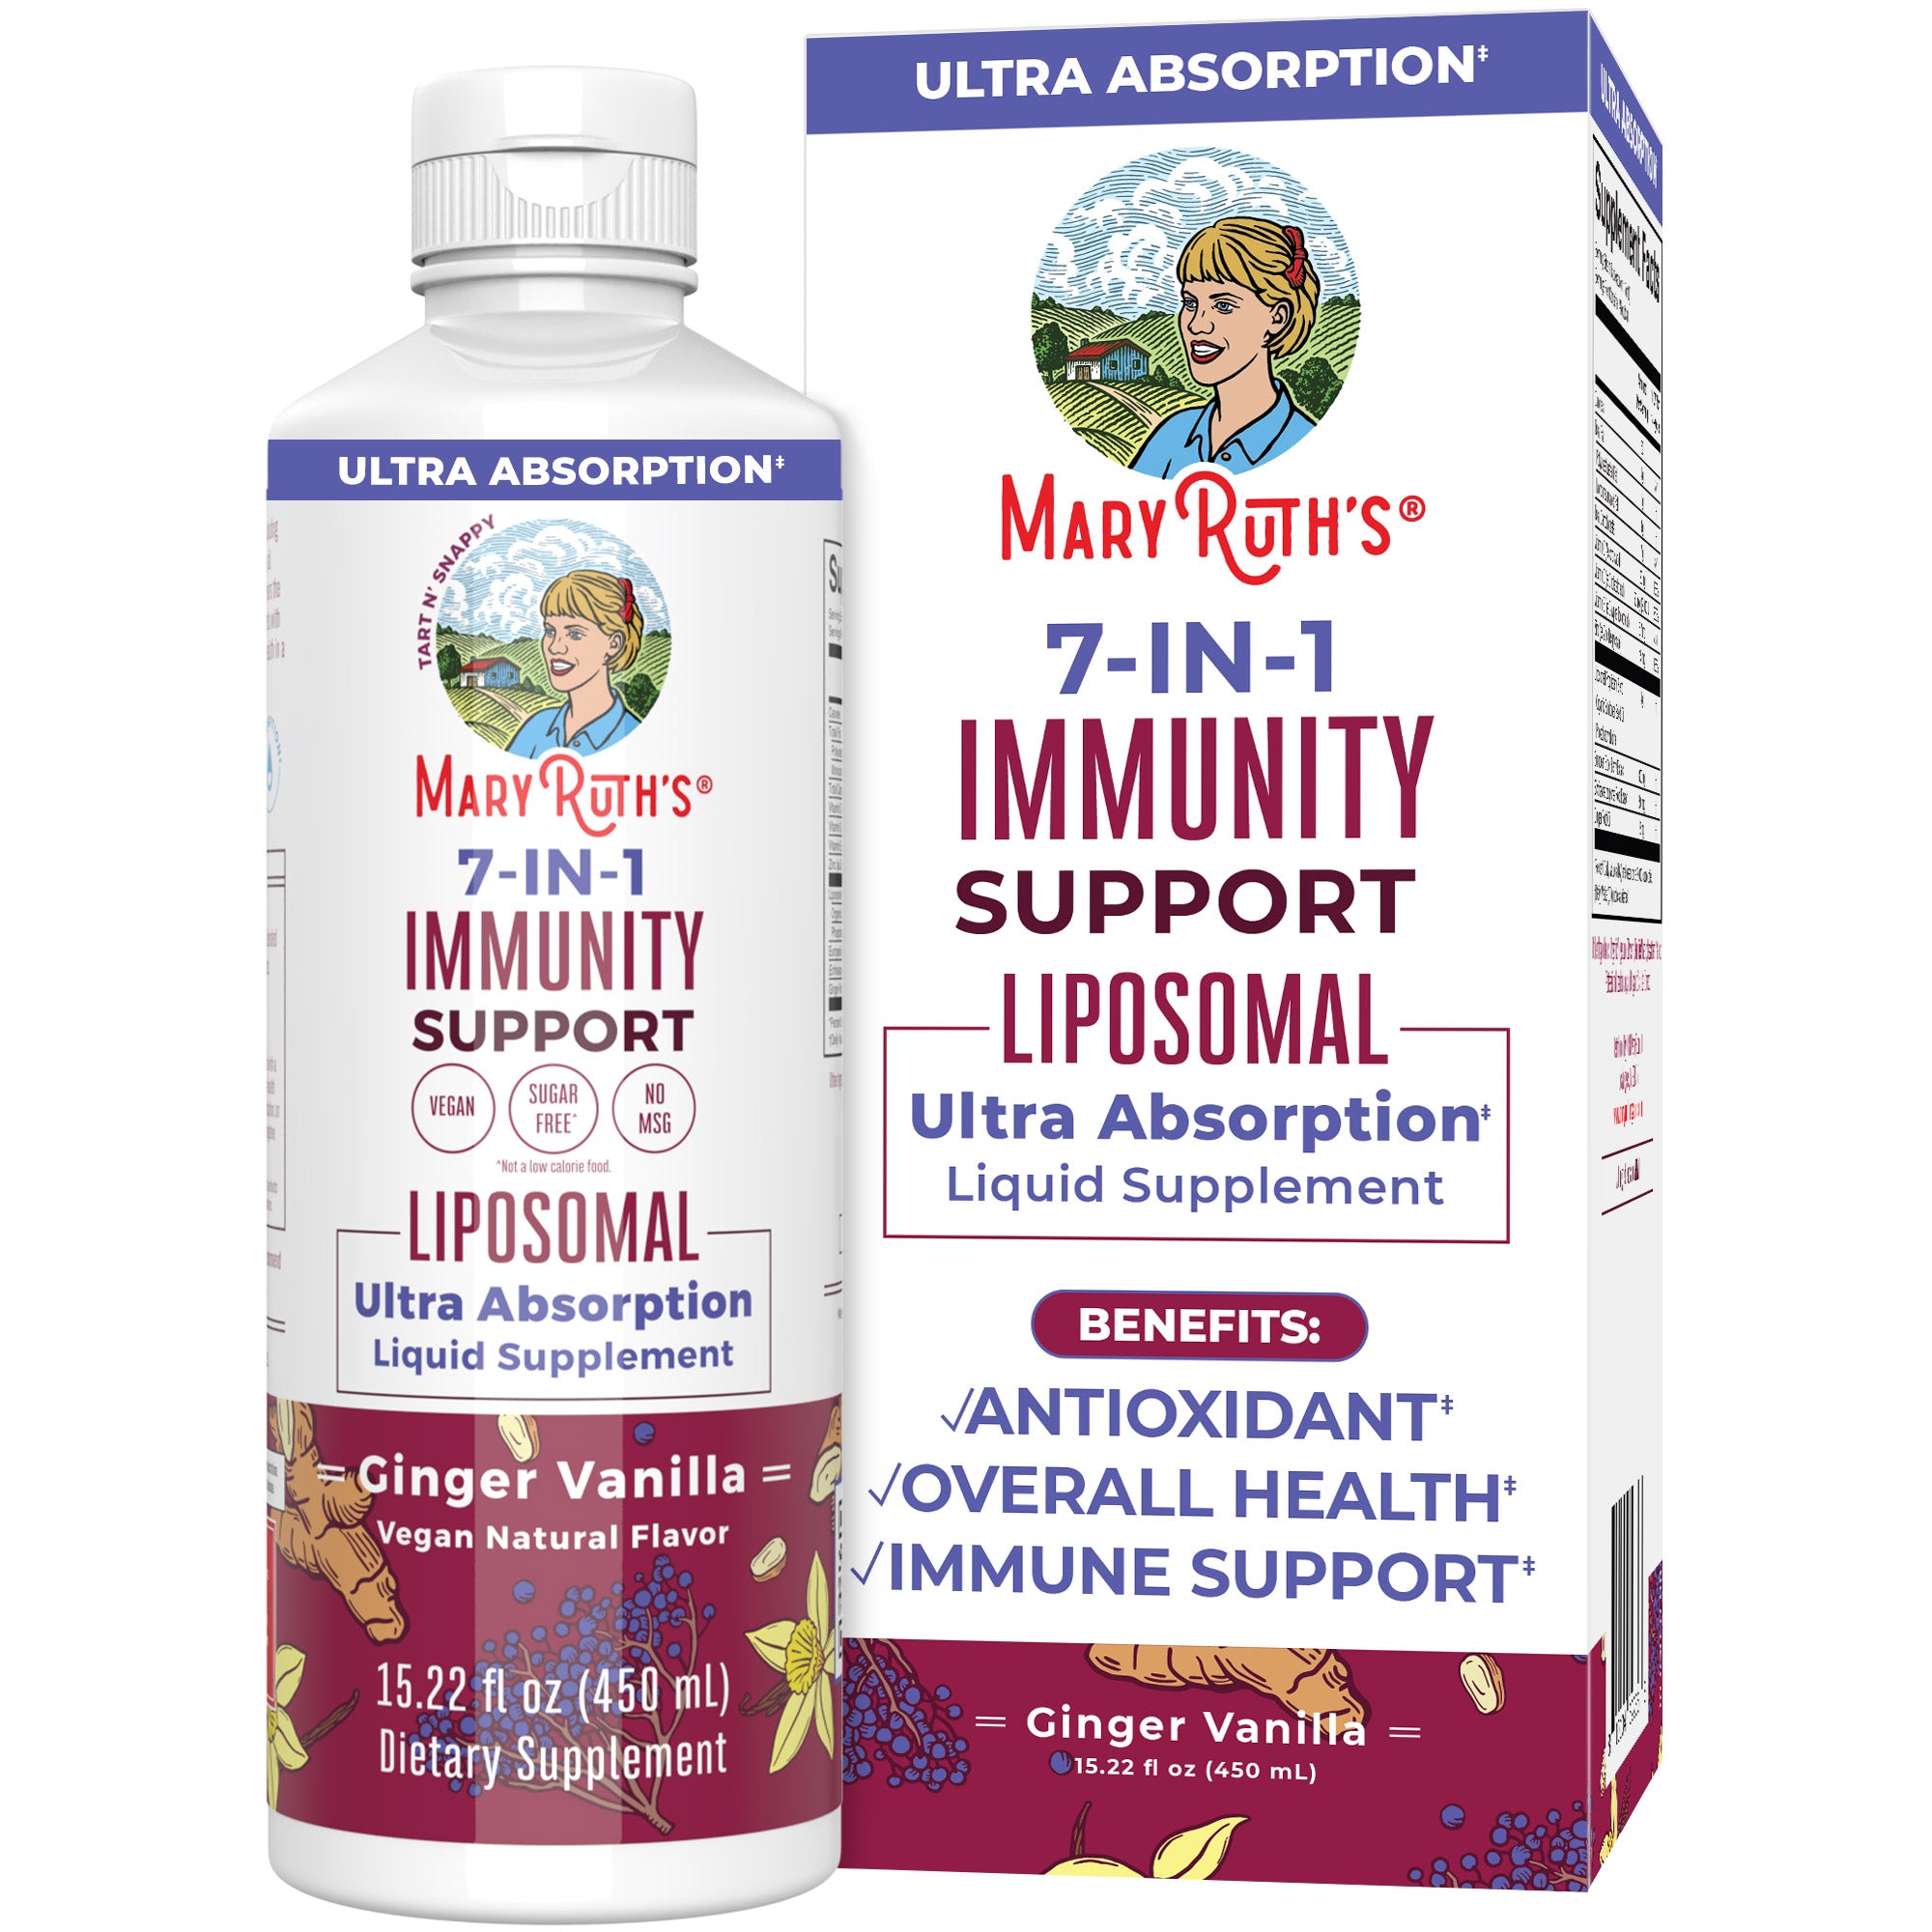 7-in-1 Immunity Support Liposomal